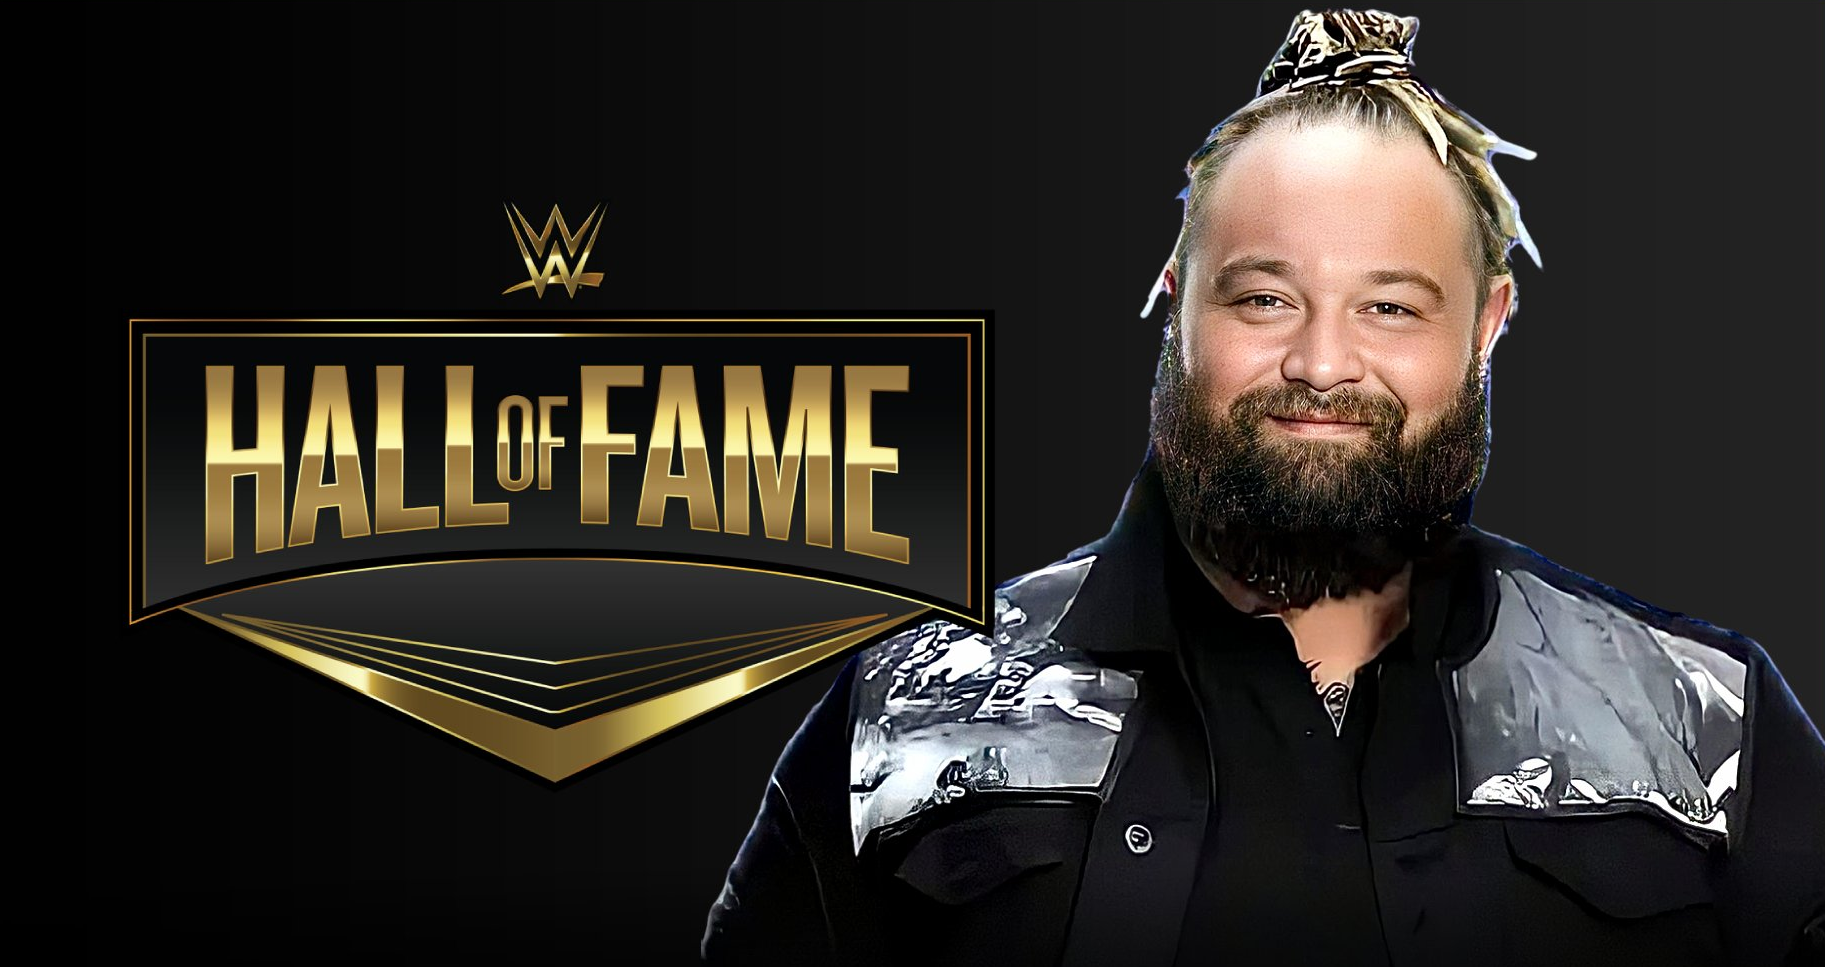 Les fans sur Twitter veulent Bray Wyatt au Hall of Fame pour